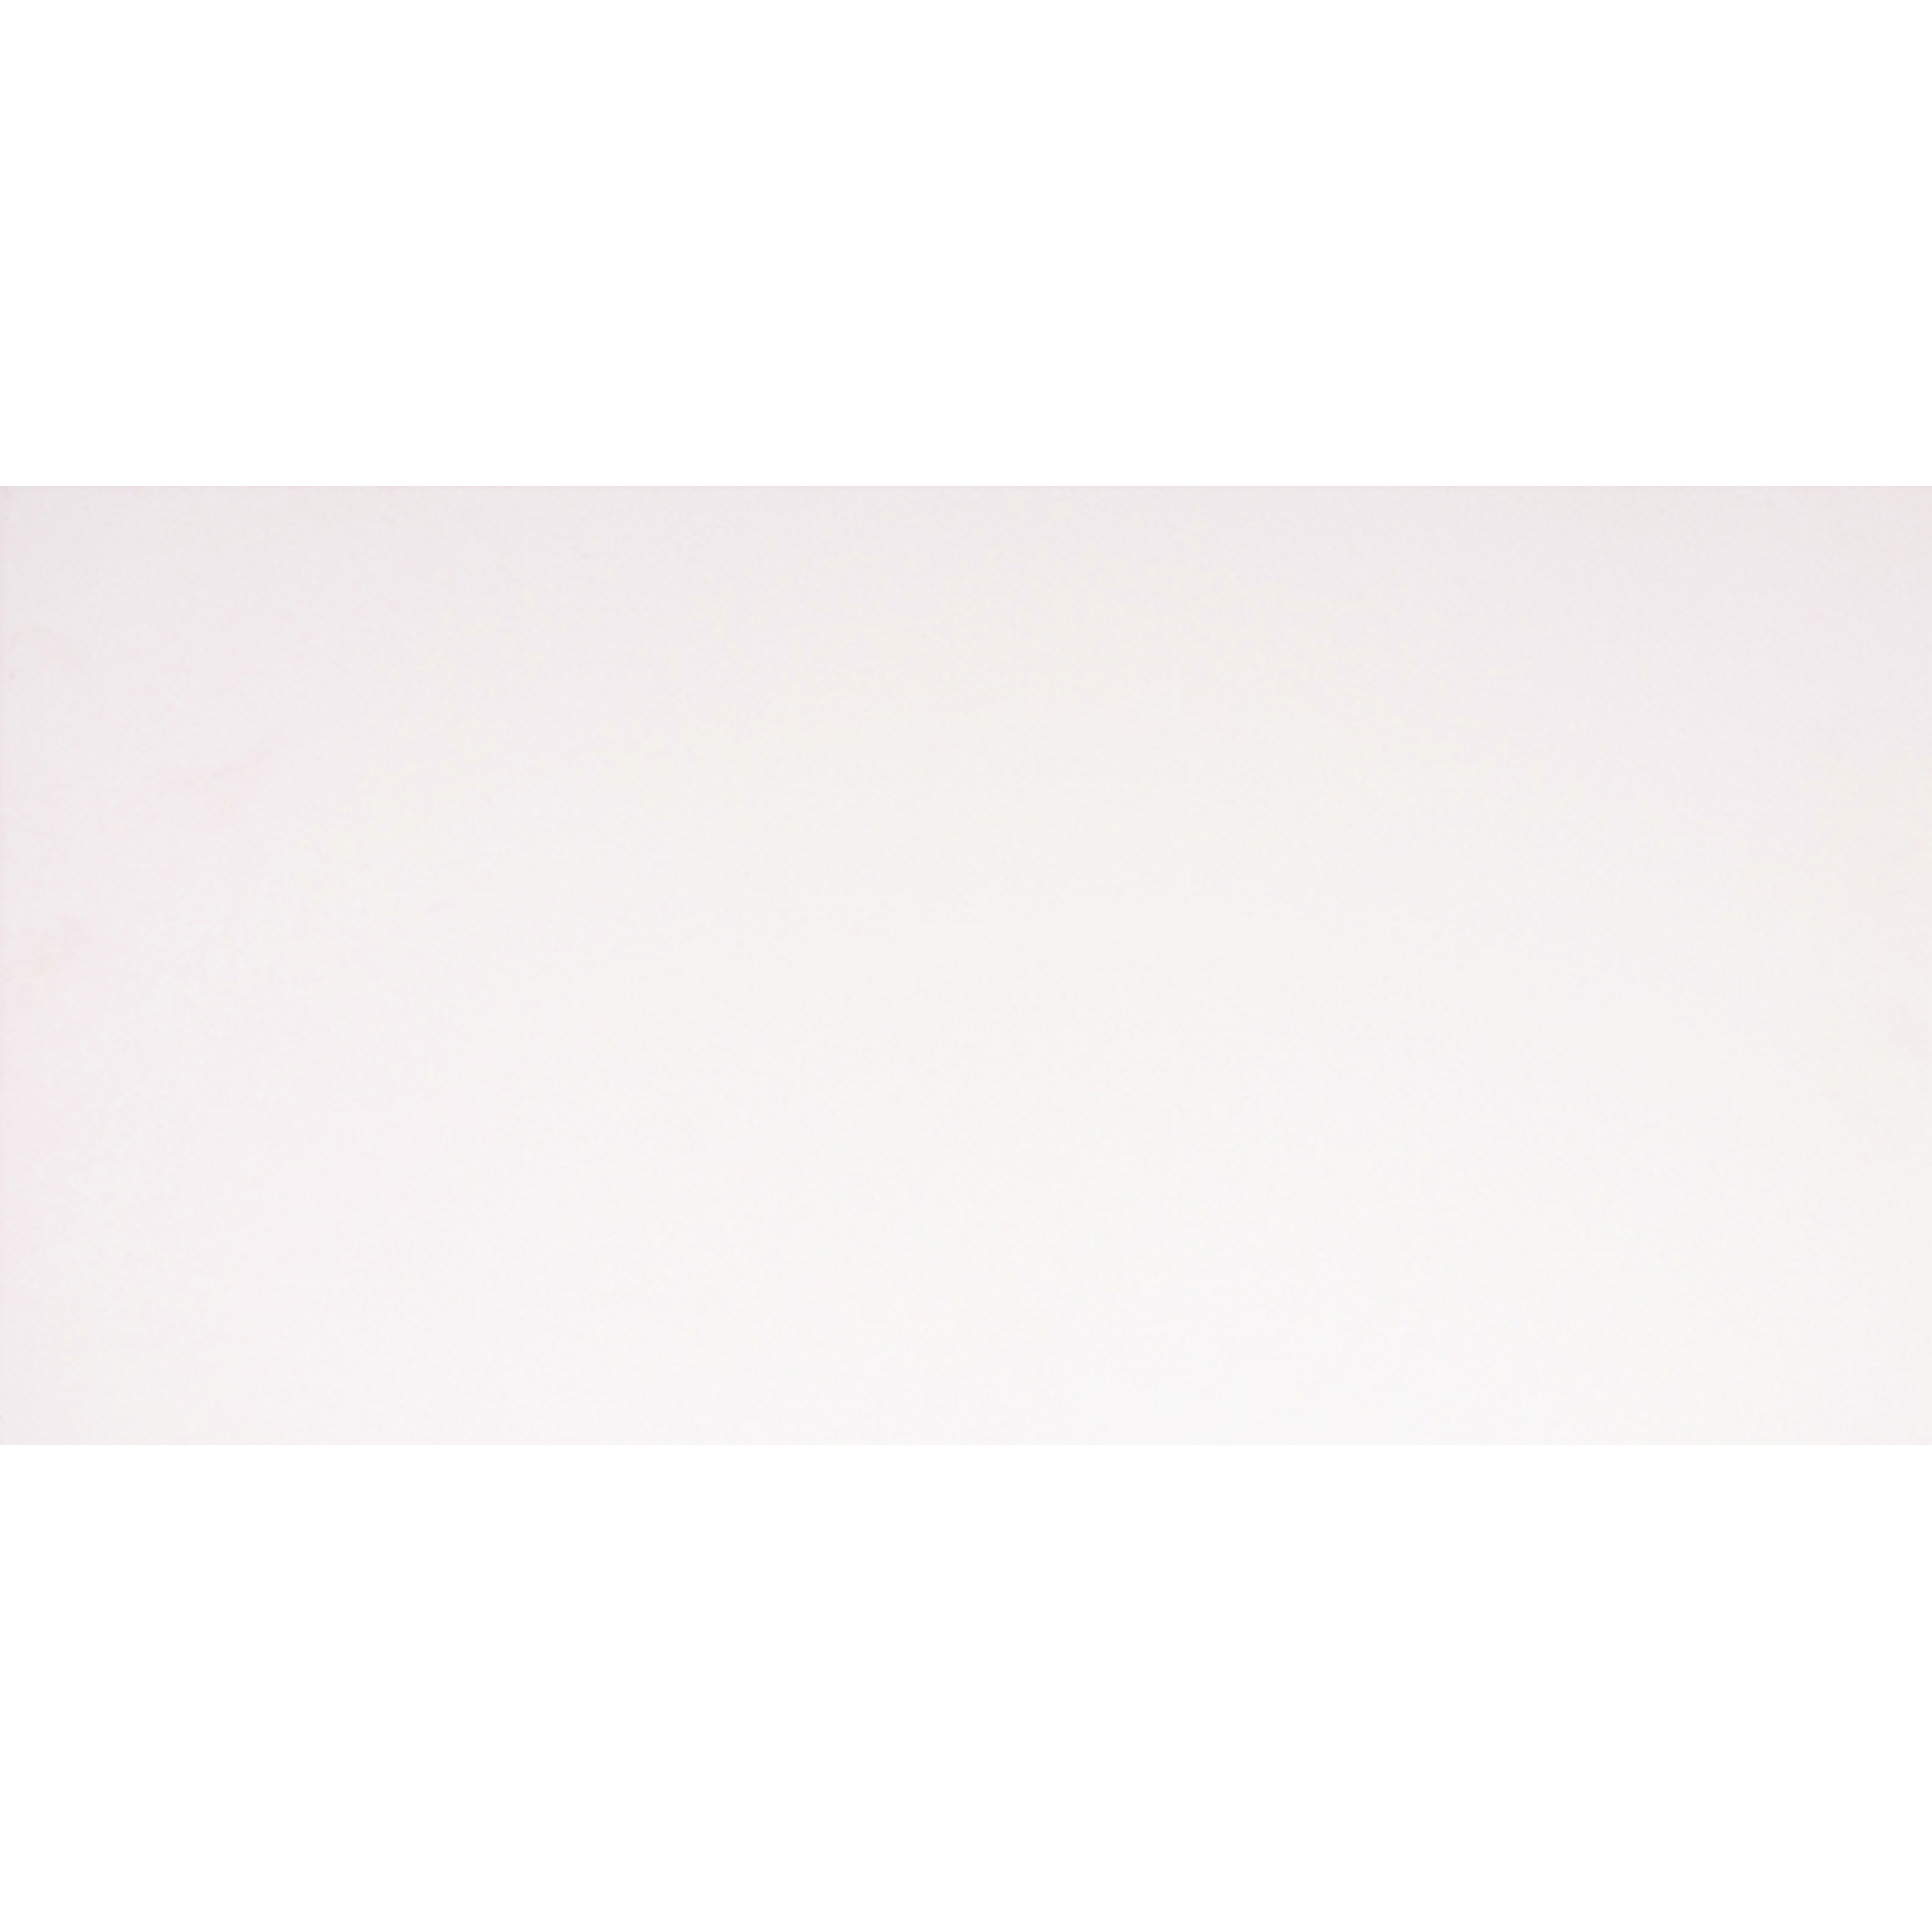 Wandfliese 'Bianca' Steingut weiß glänzend 29 x 59,3 cm + product picture